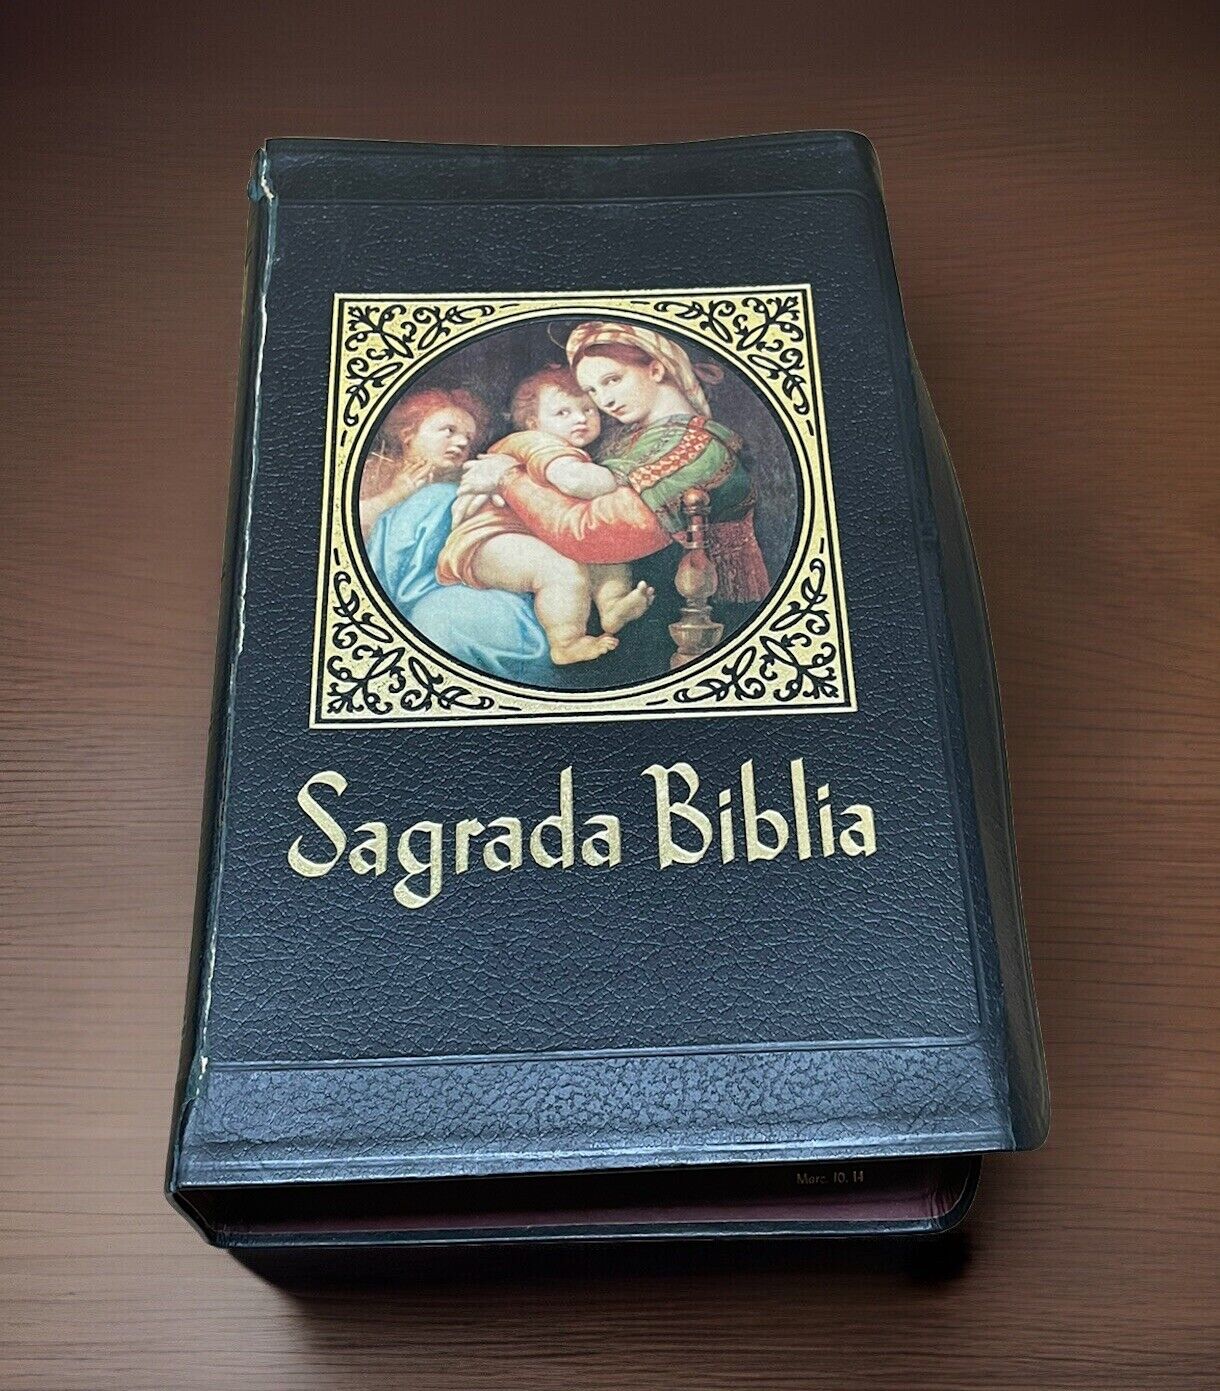 Sagrada Biblia Straubinger, Edición De 1958 Y Publicada En 1968 ilustraciones ⭐️